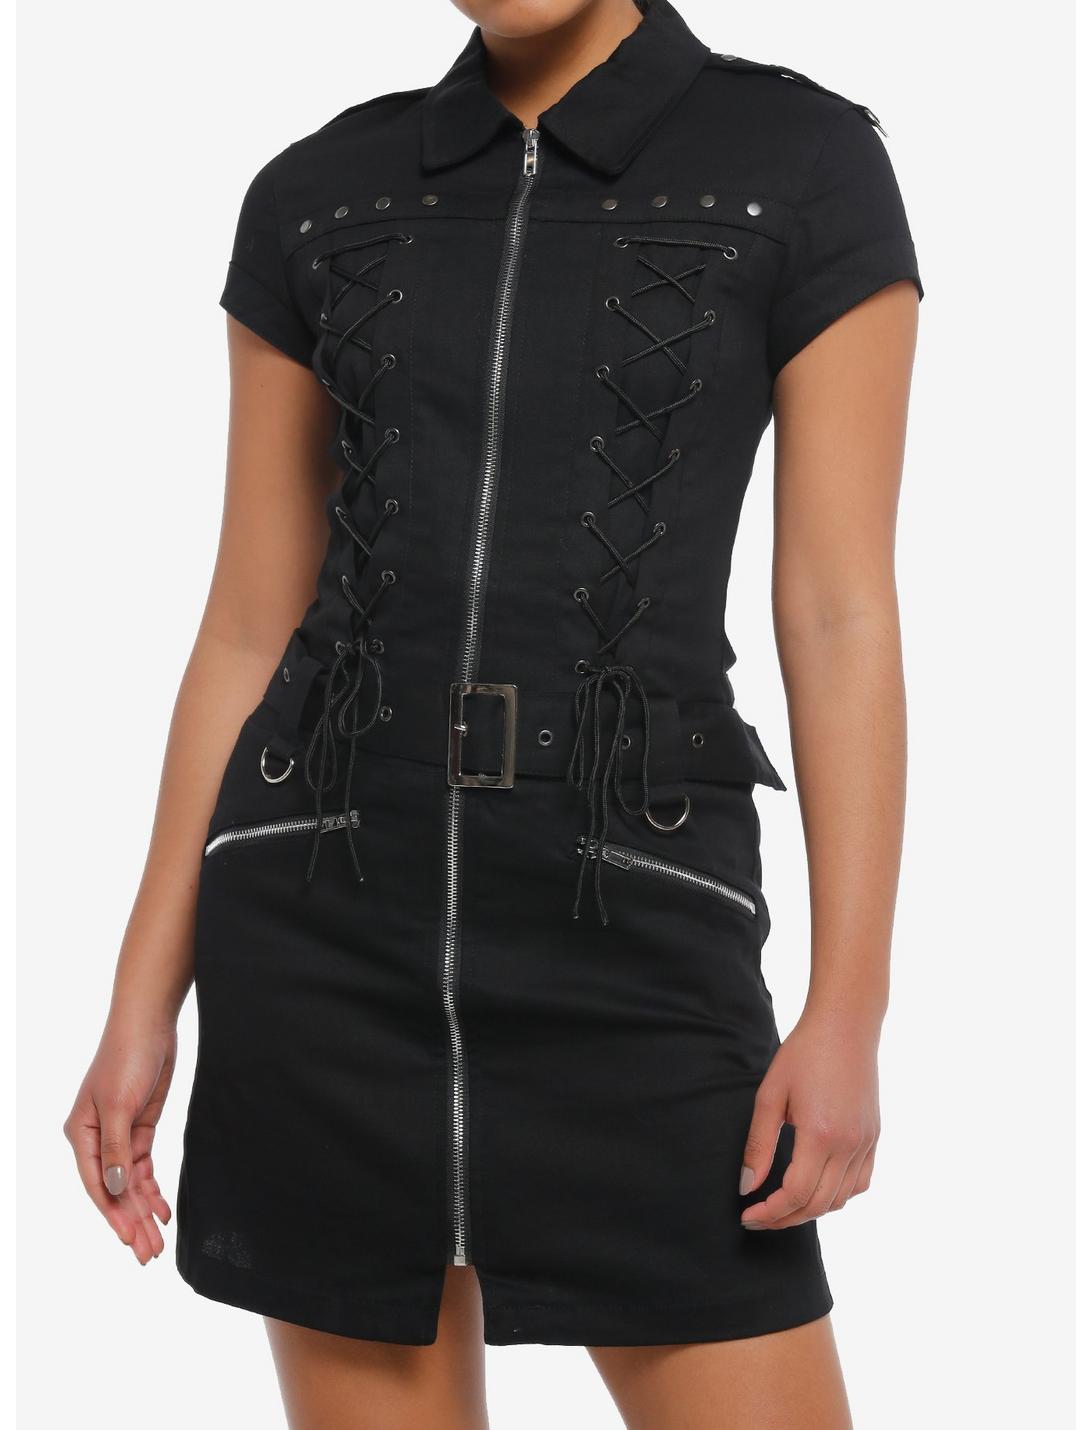 Black Lace-Up Grommet Zipper Dress, BLACK, hi-res